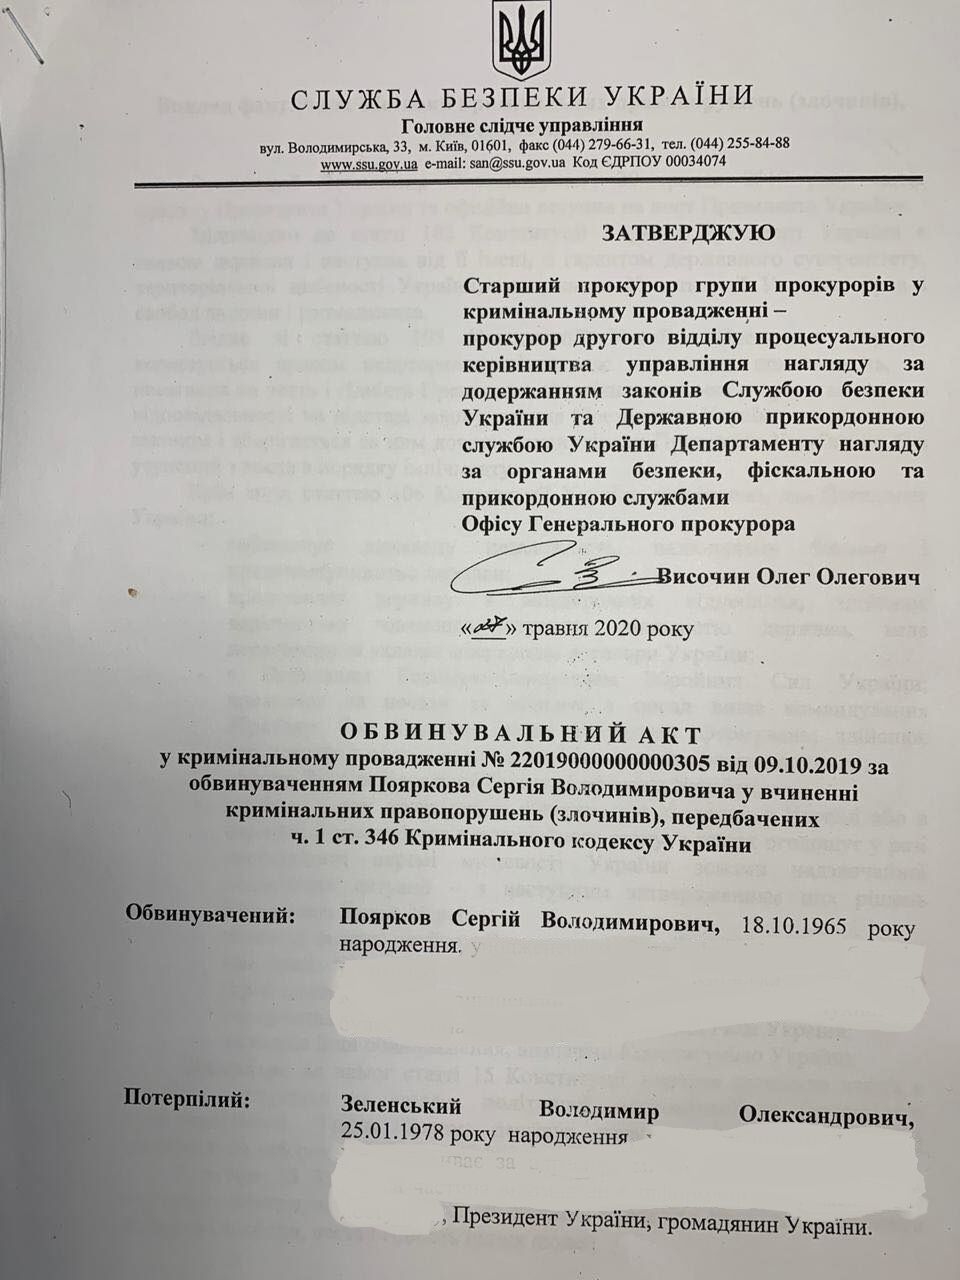 Телеведучому Пояркову вручили звинувачення у погрозах Зеленському. Документ